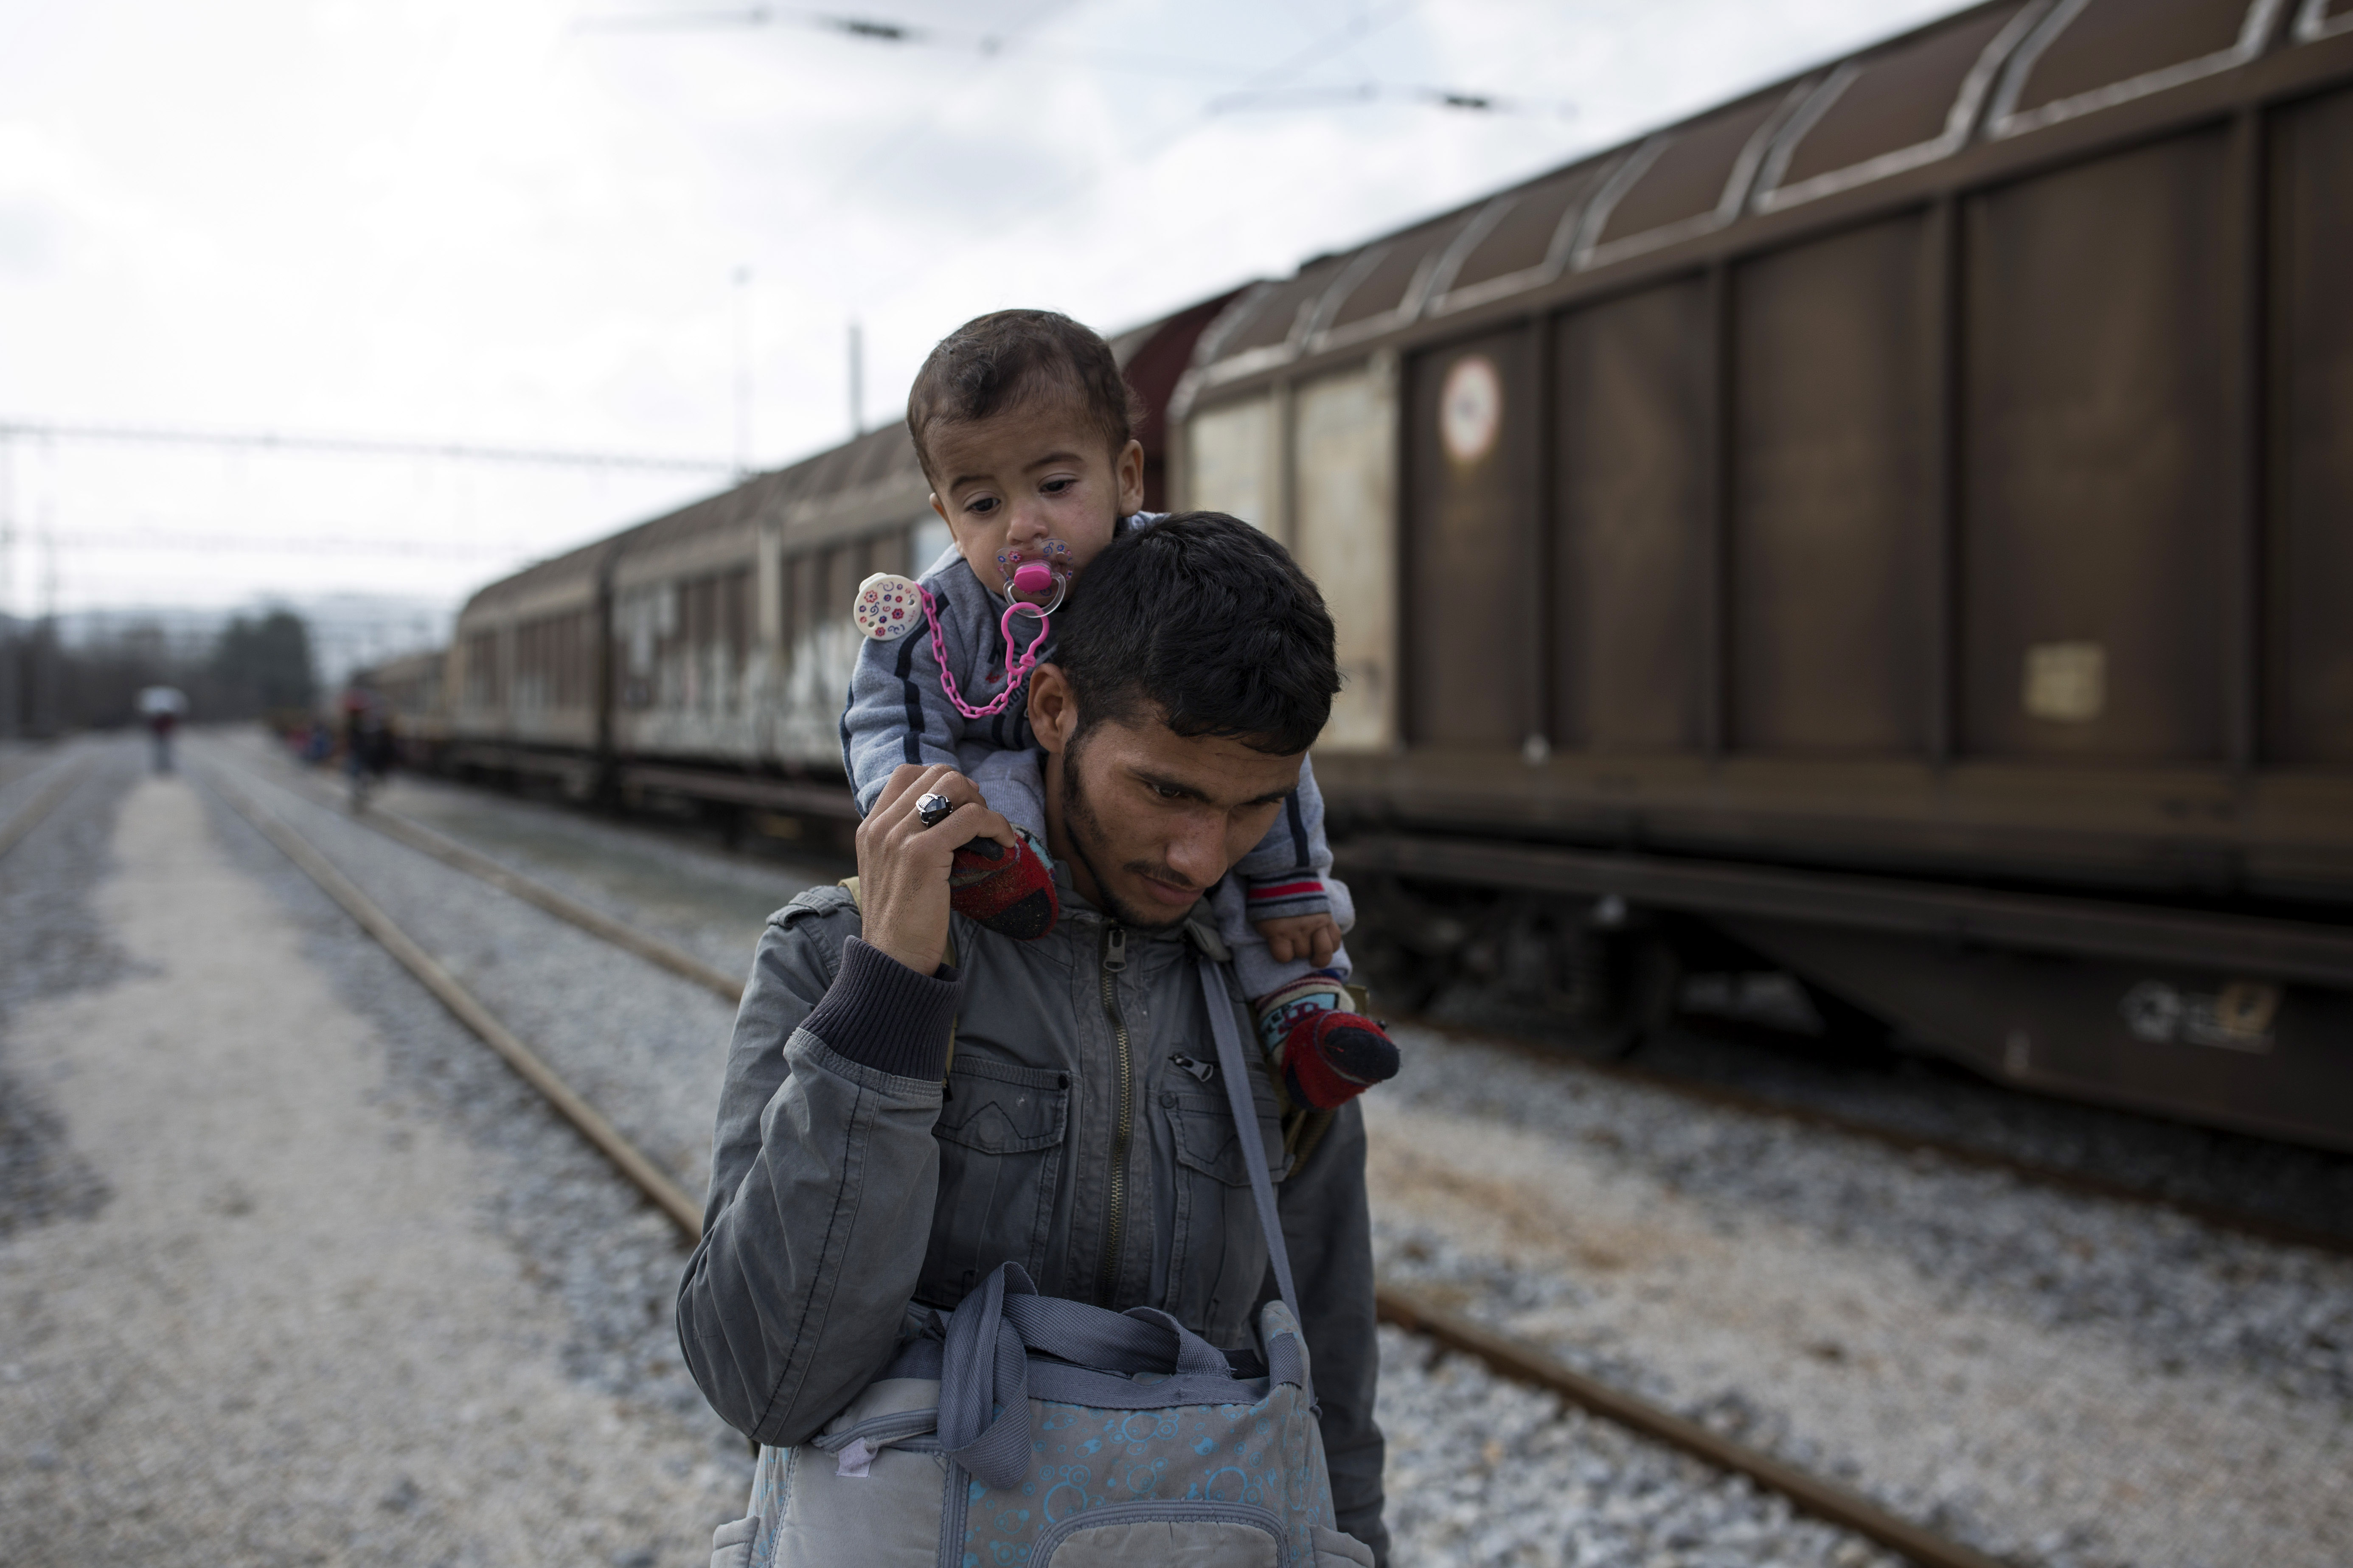 Polizei: Immer mehr Flüchtlinge kommen auf Güterzügen